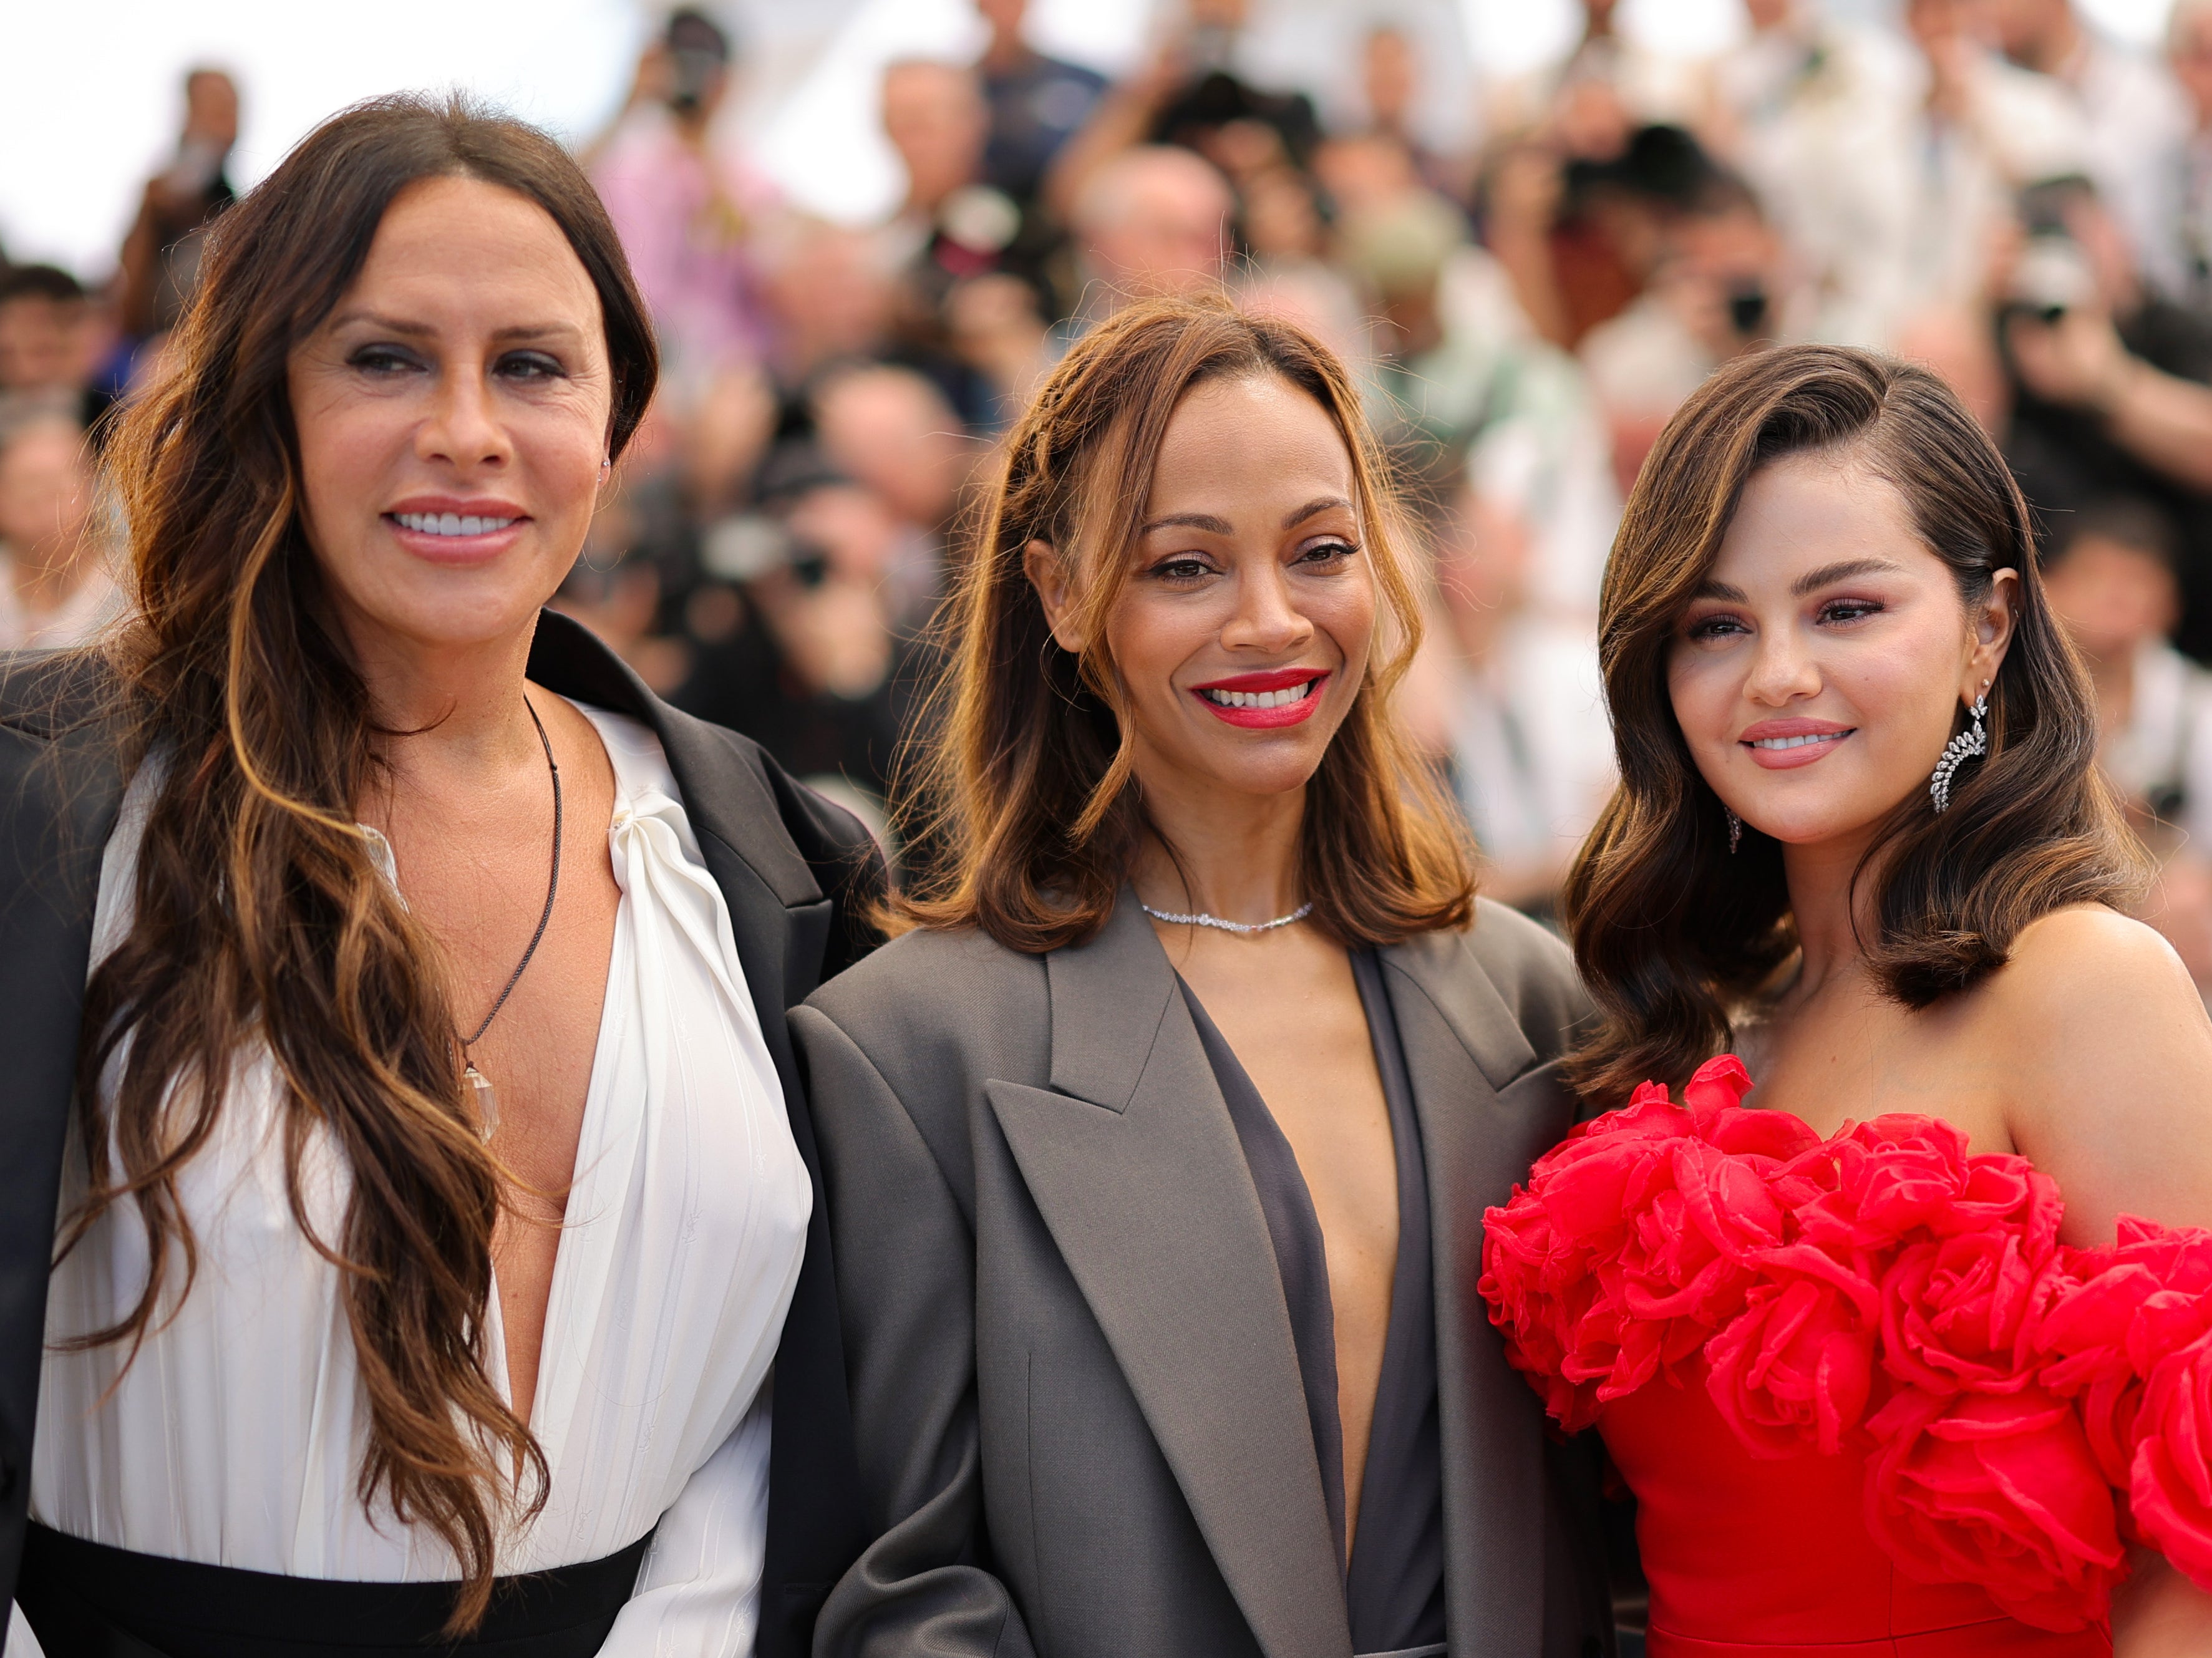 Karla Sofía Gascón, Zoe Saldana and Selena Gomez promoting ‘Emilia Pérez’ at Cannes